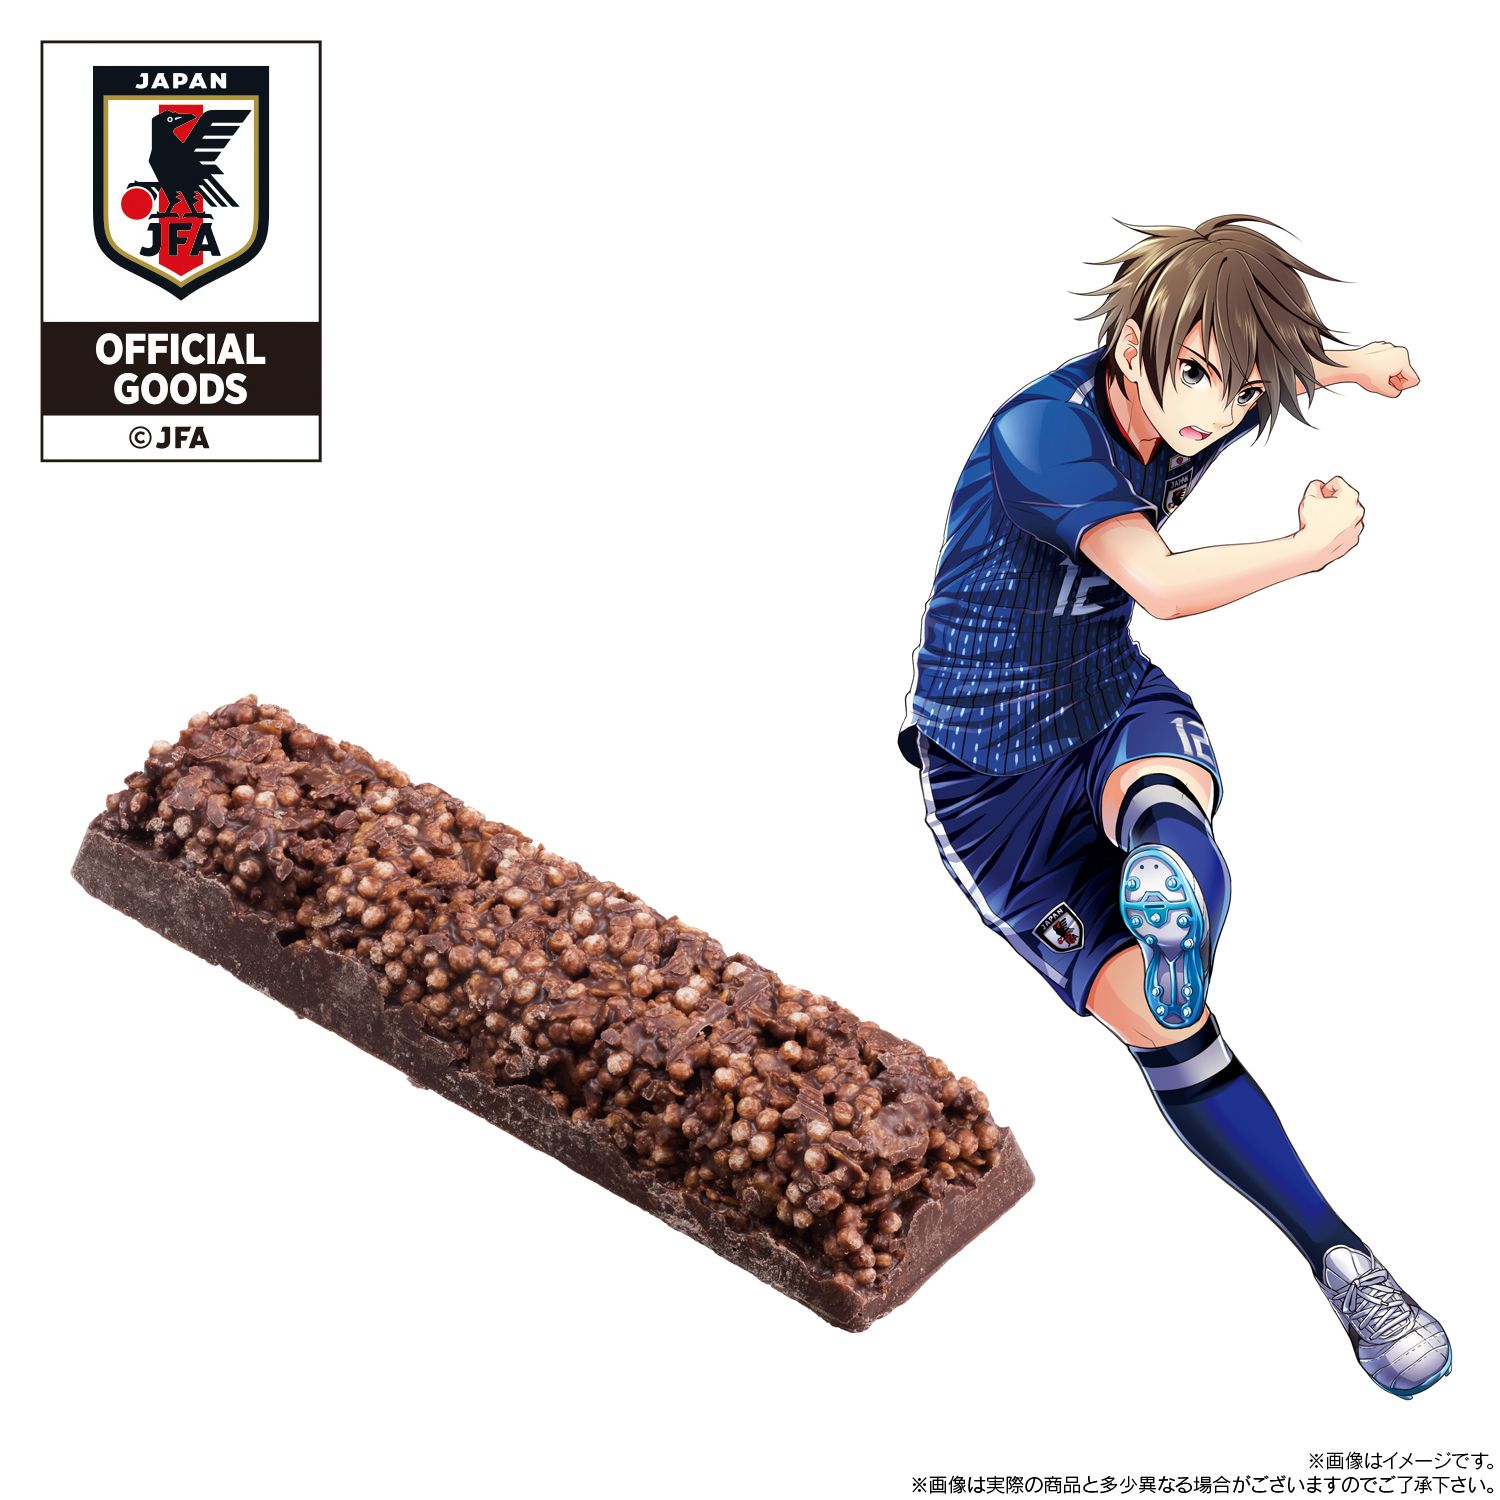 クロスバー がコンセプトの日本代表公式ライセンス商品 チョコバー 登場 サッカーキング